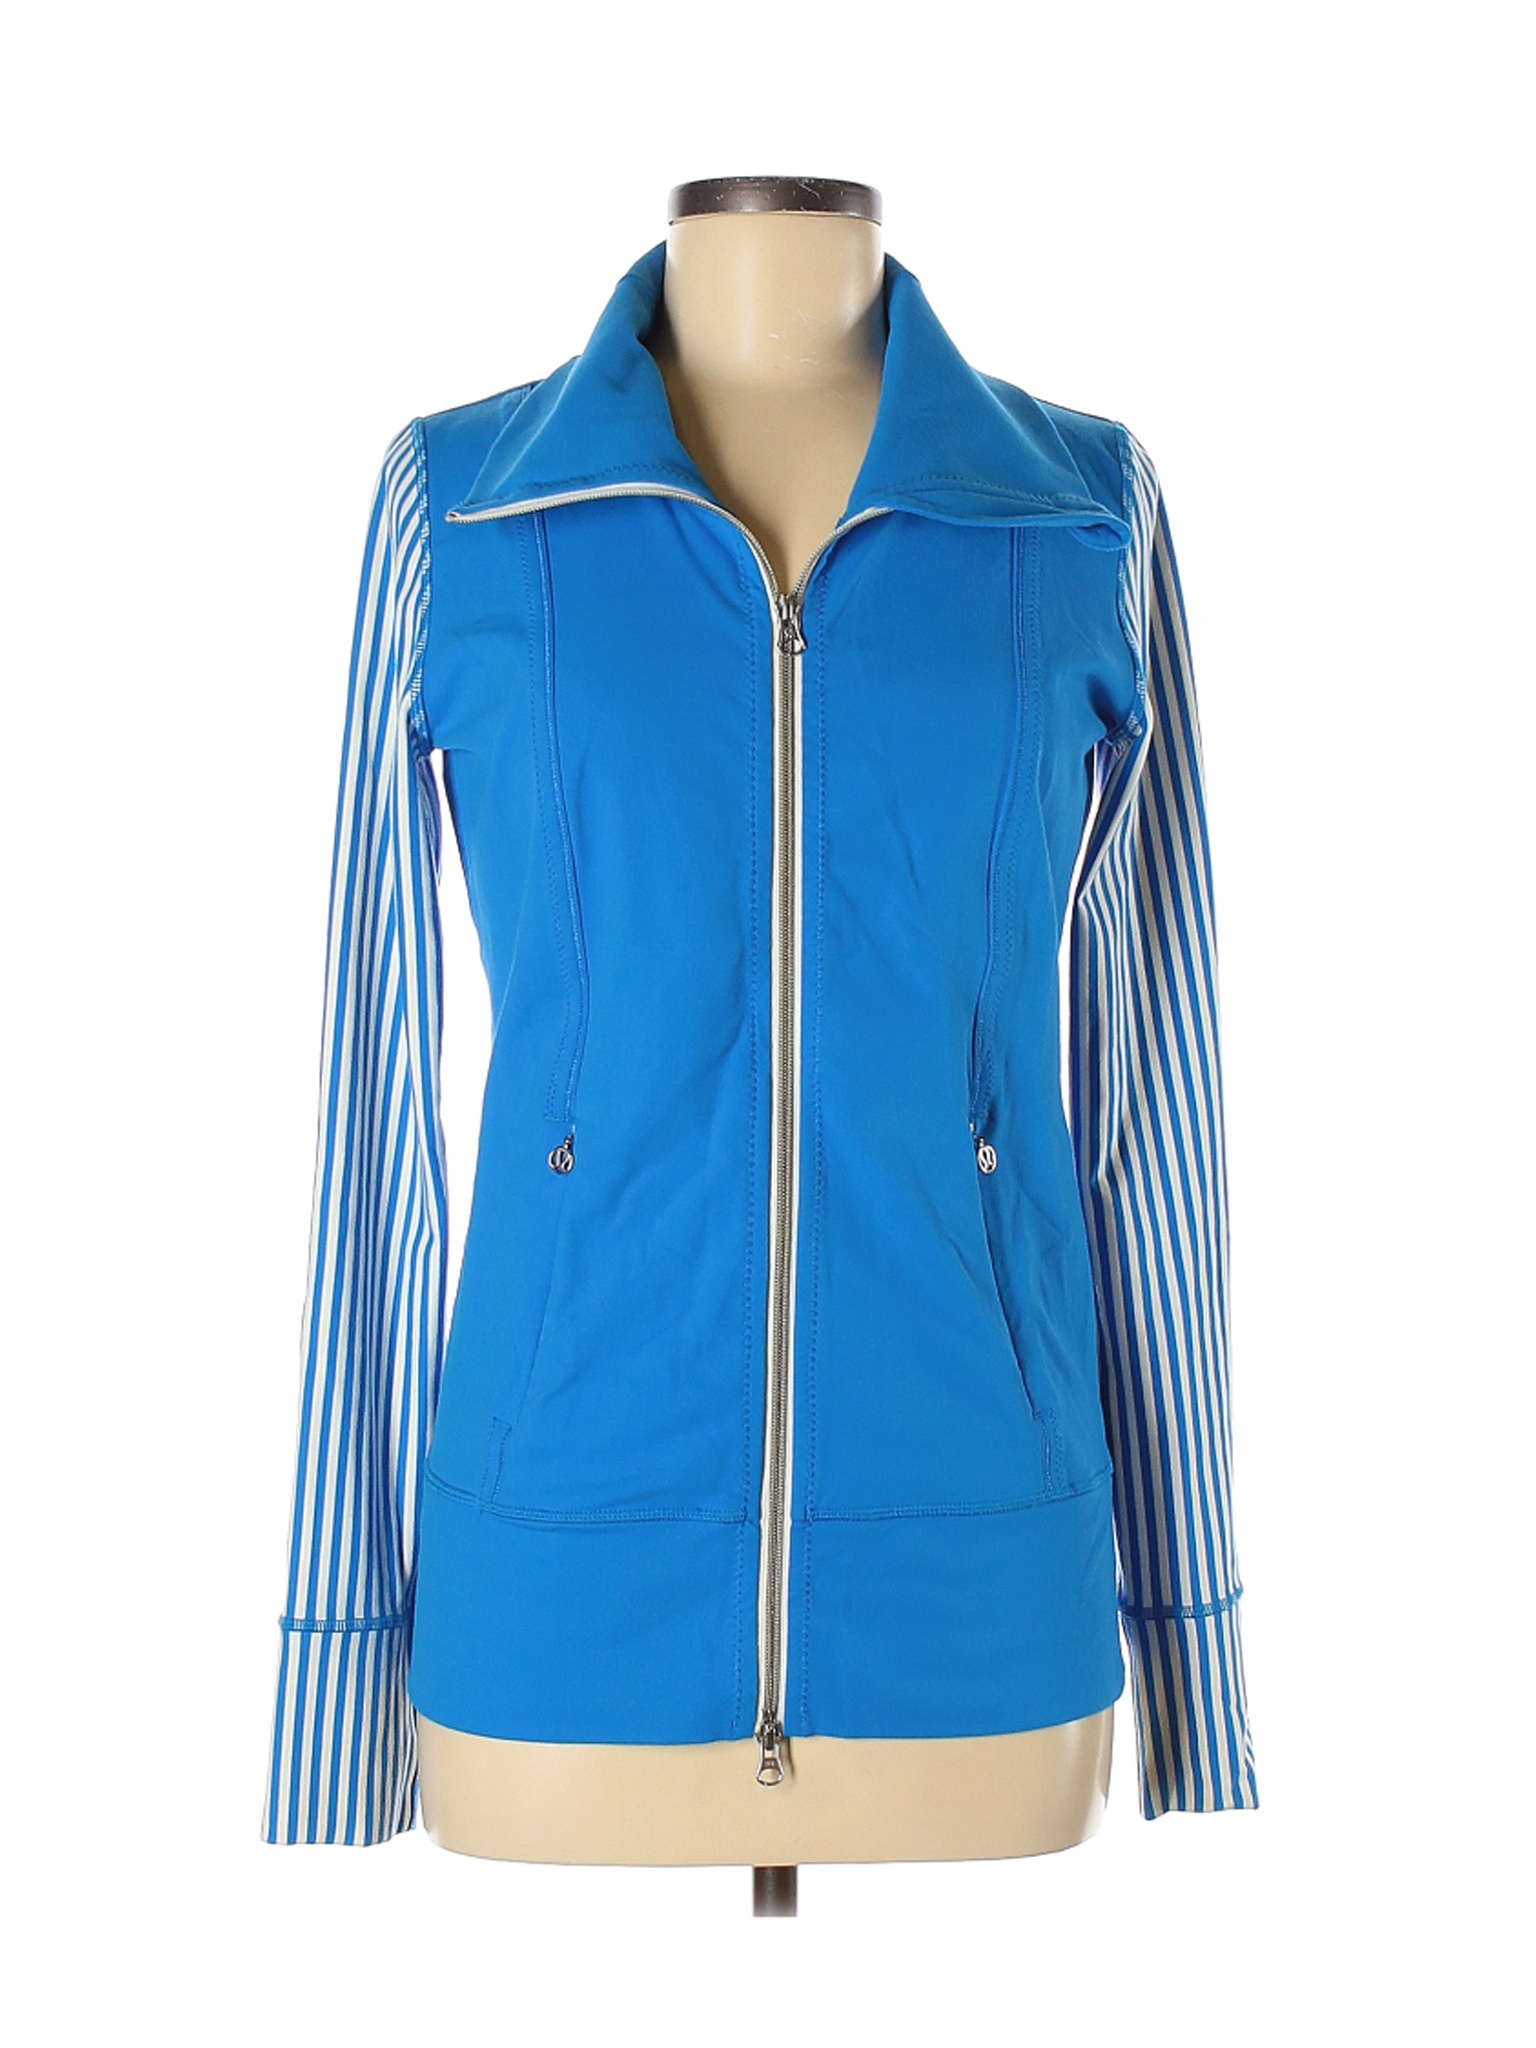 lululemon - Pre-Owned Lululemon Athletica Women's Size 6 Track Jacket ...